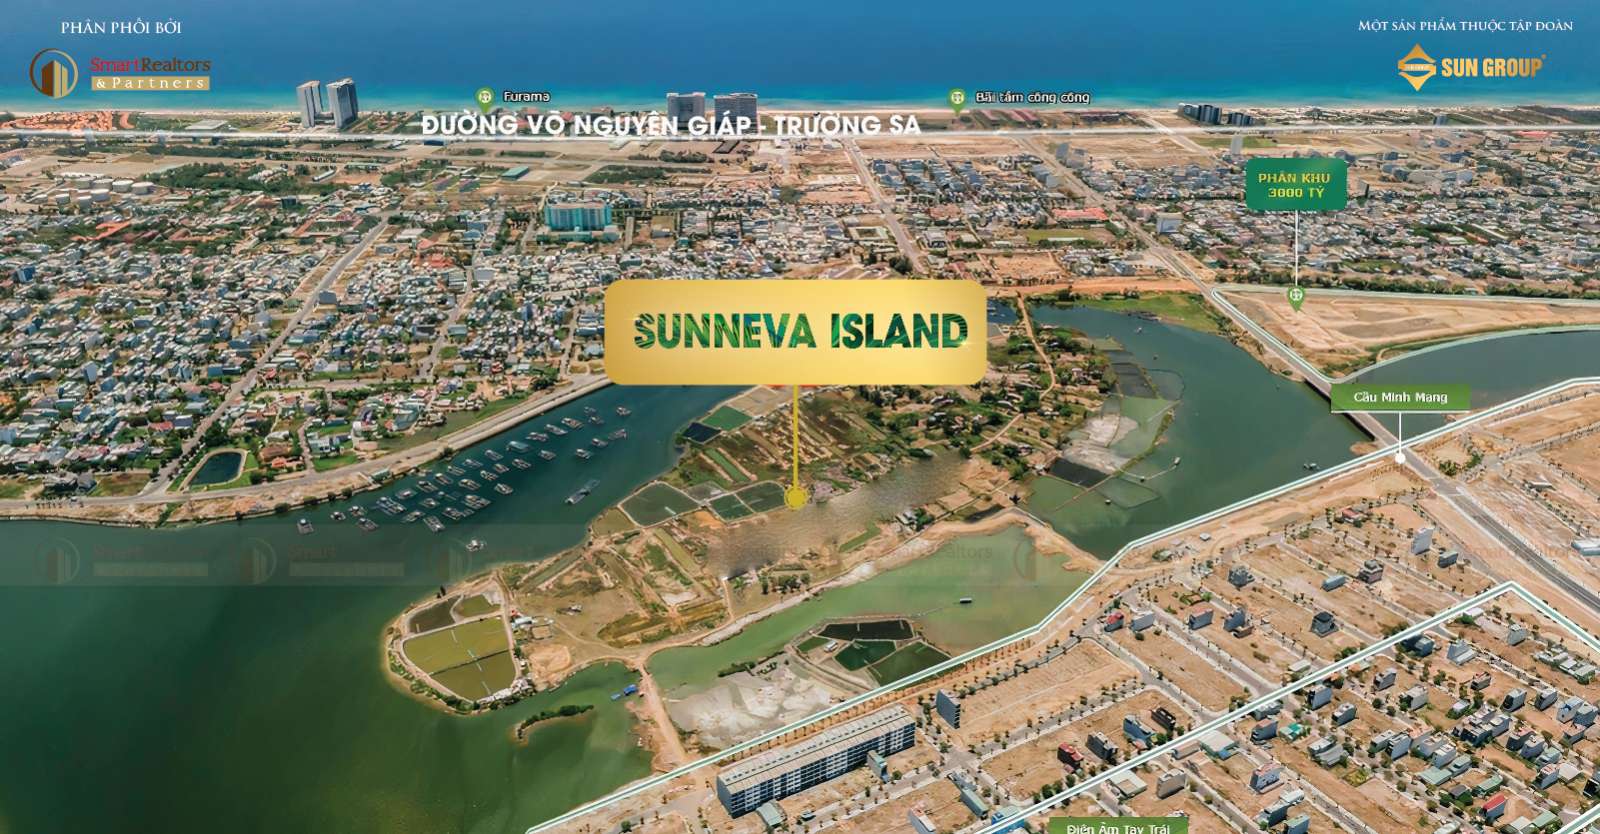 Sunneva Island mang đến lợi ích gì cho nhà đầu tư?